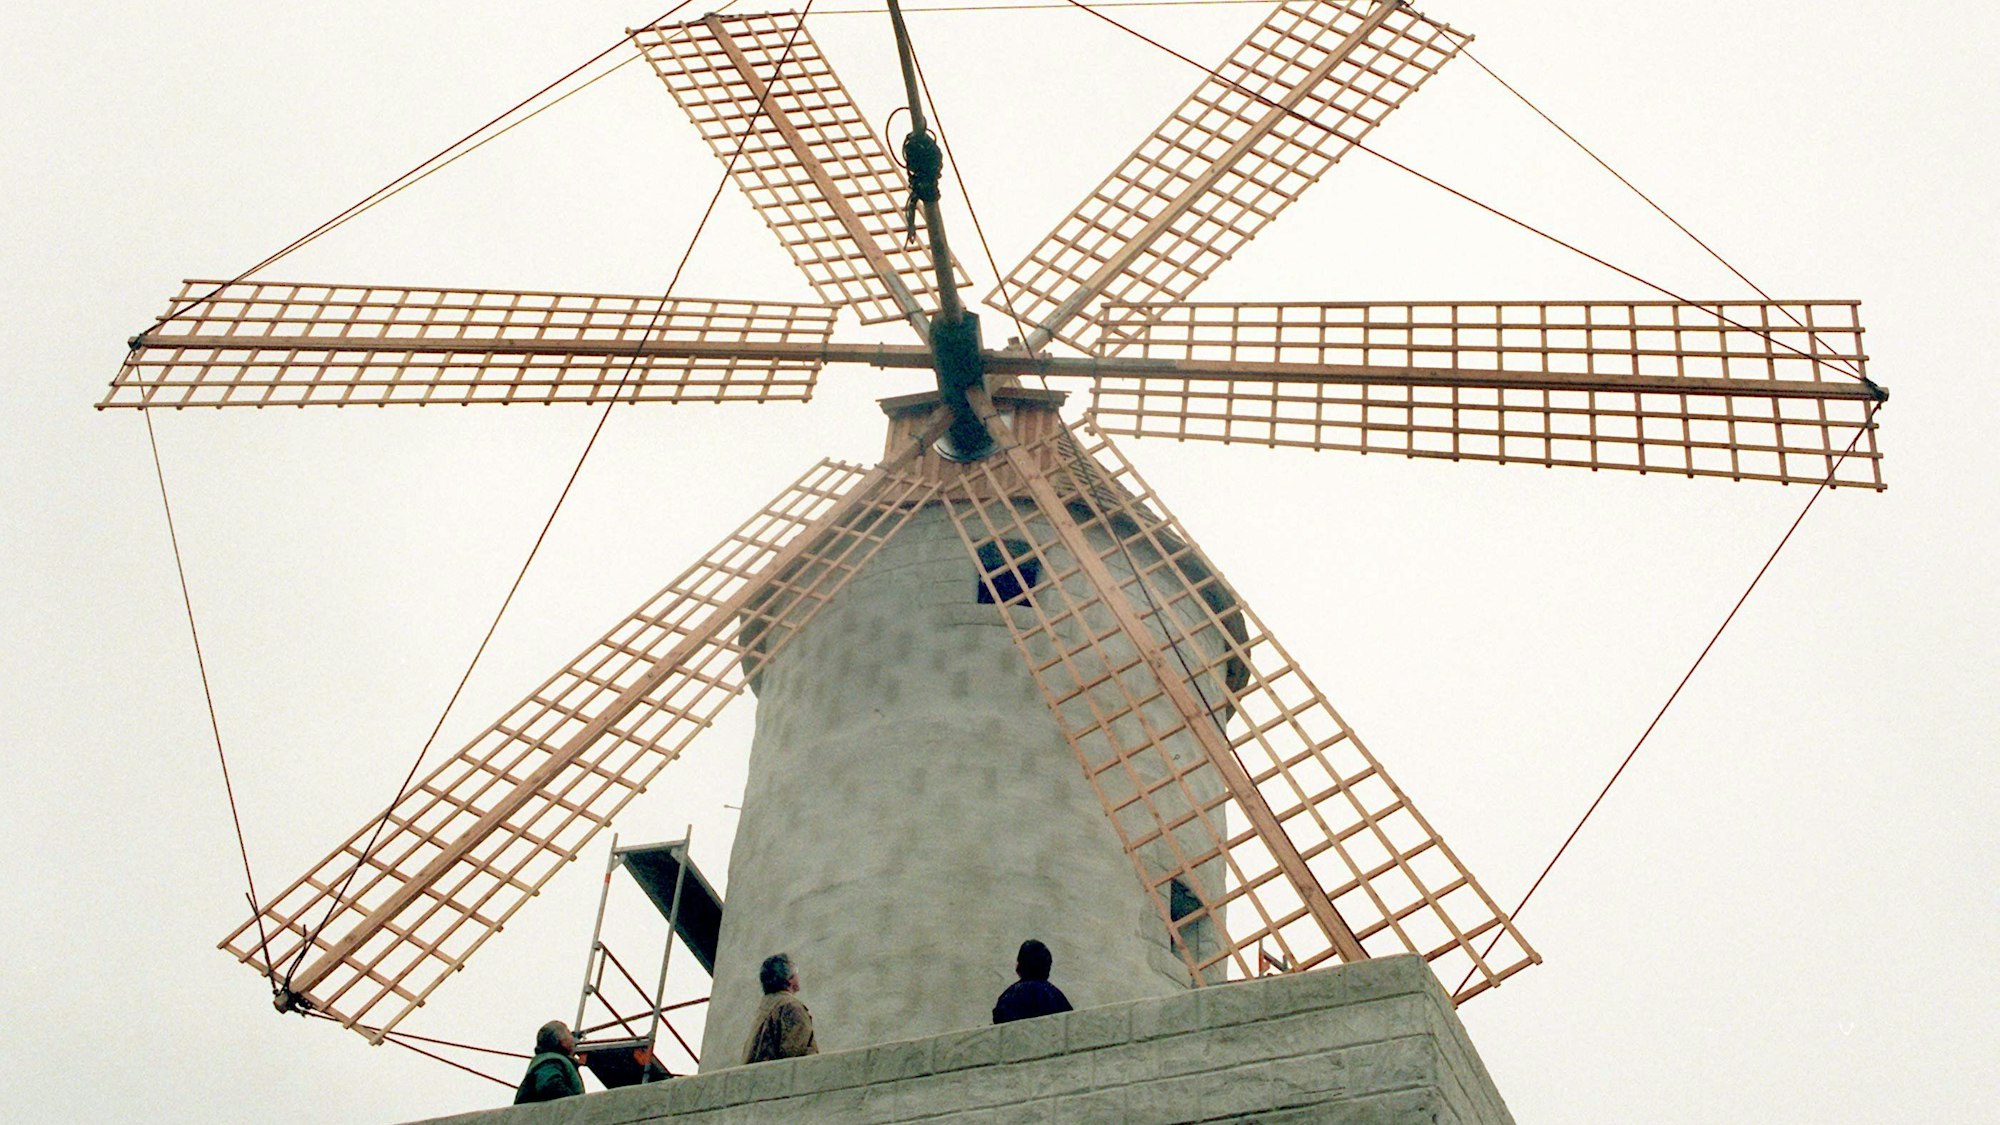 Wie auf Mallorca sieht die Kopie einer Windmühle aus, die im internationalen Mühlenmuseum in Gifhorn steht. Am Kopf des rund 15 Meter hohen Gebäudes drehen sich sechs Flügel.